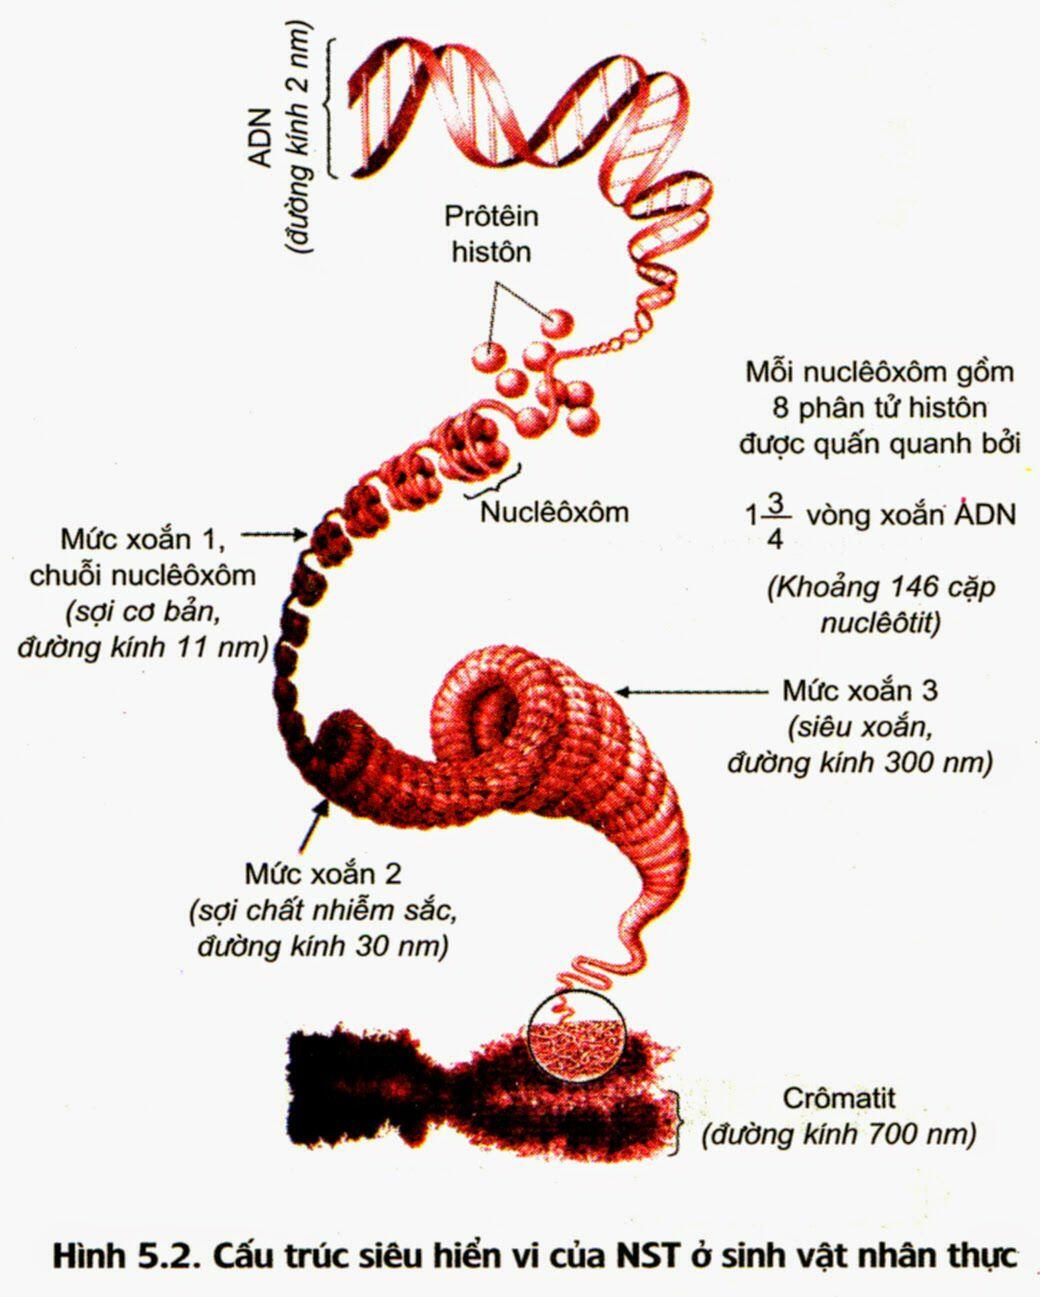 Đơn vị nhỏ nhất trong cấu trúc nhiễm sắc thể gồm đủ 2 thành phần ADN và prôtêin histon là 